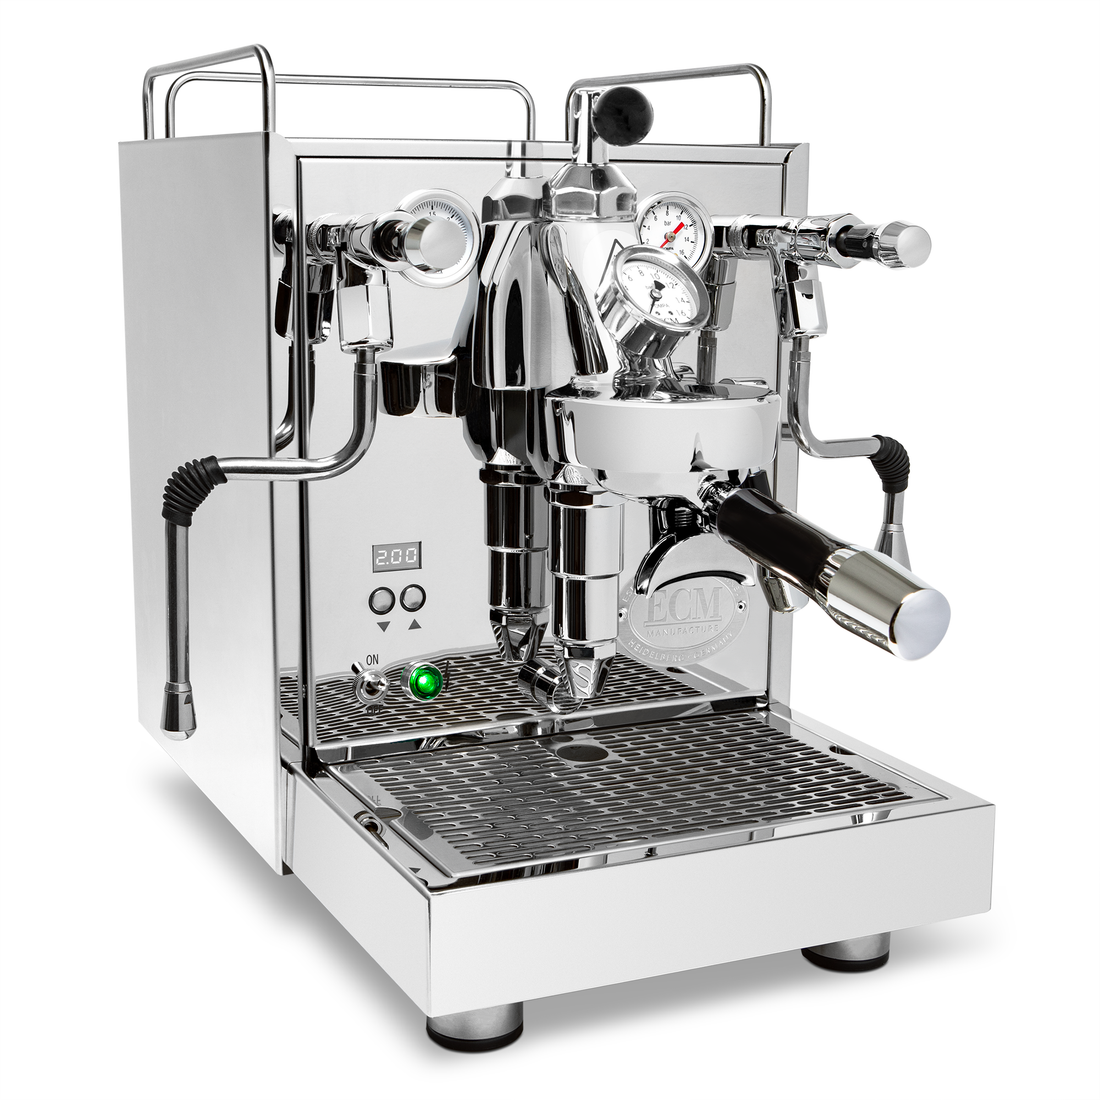 ECM Mechanika Max Espresso Machine with Flow Control